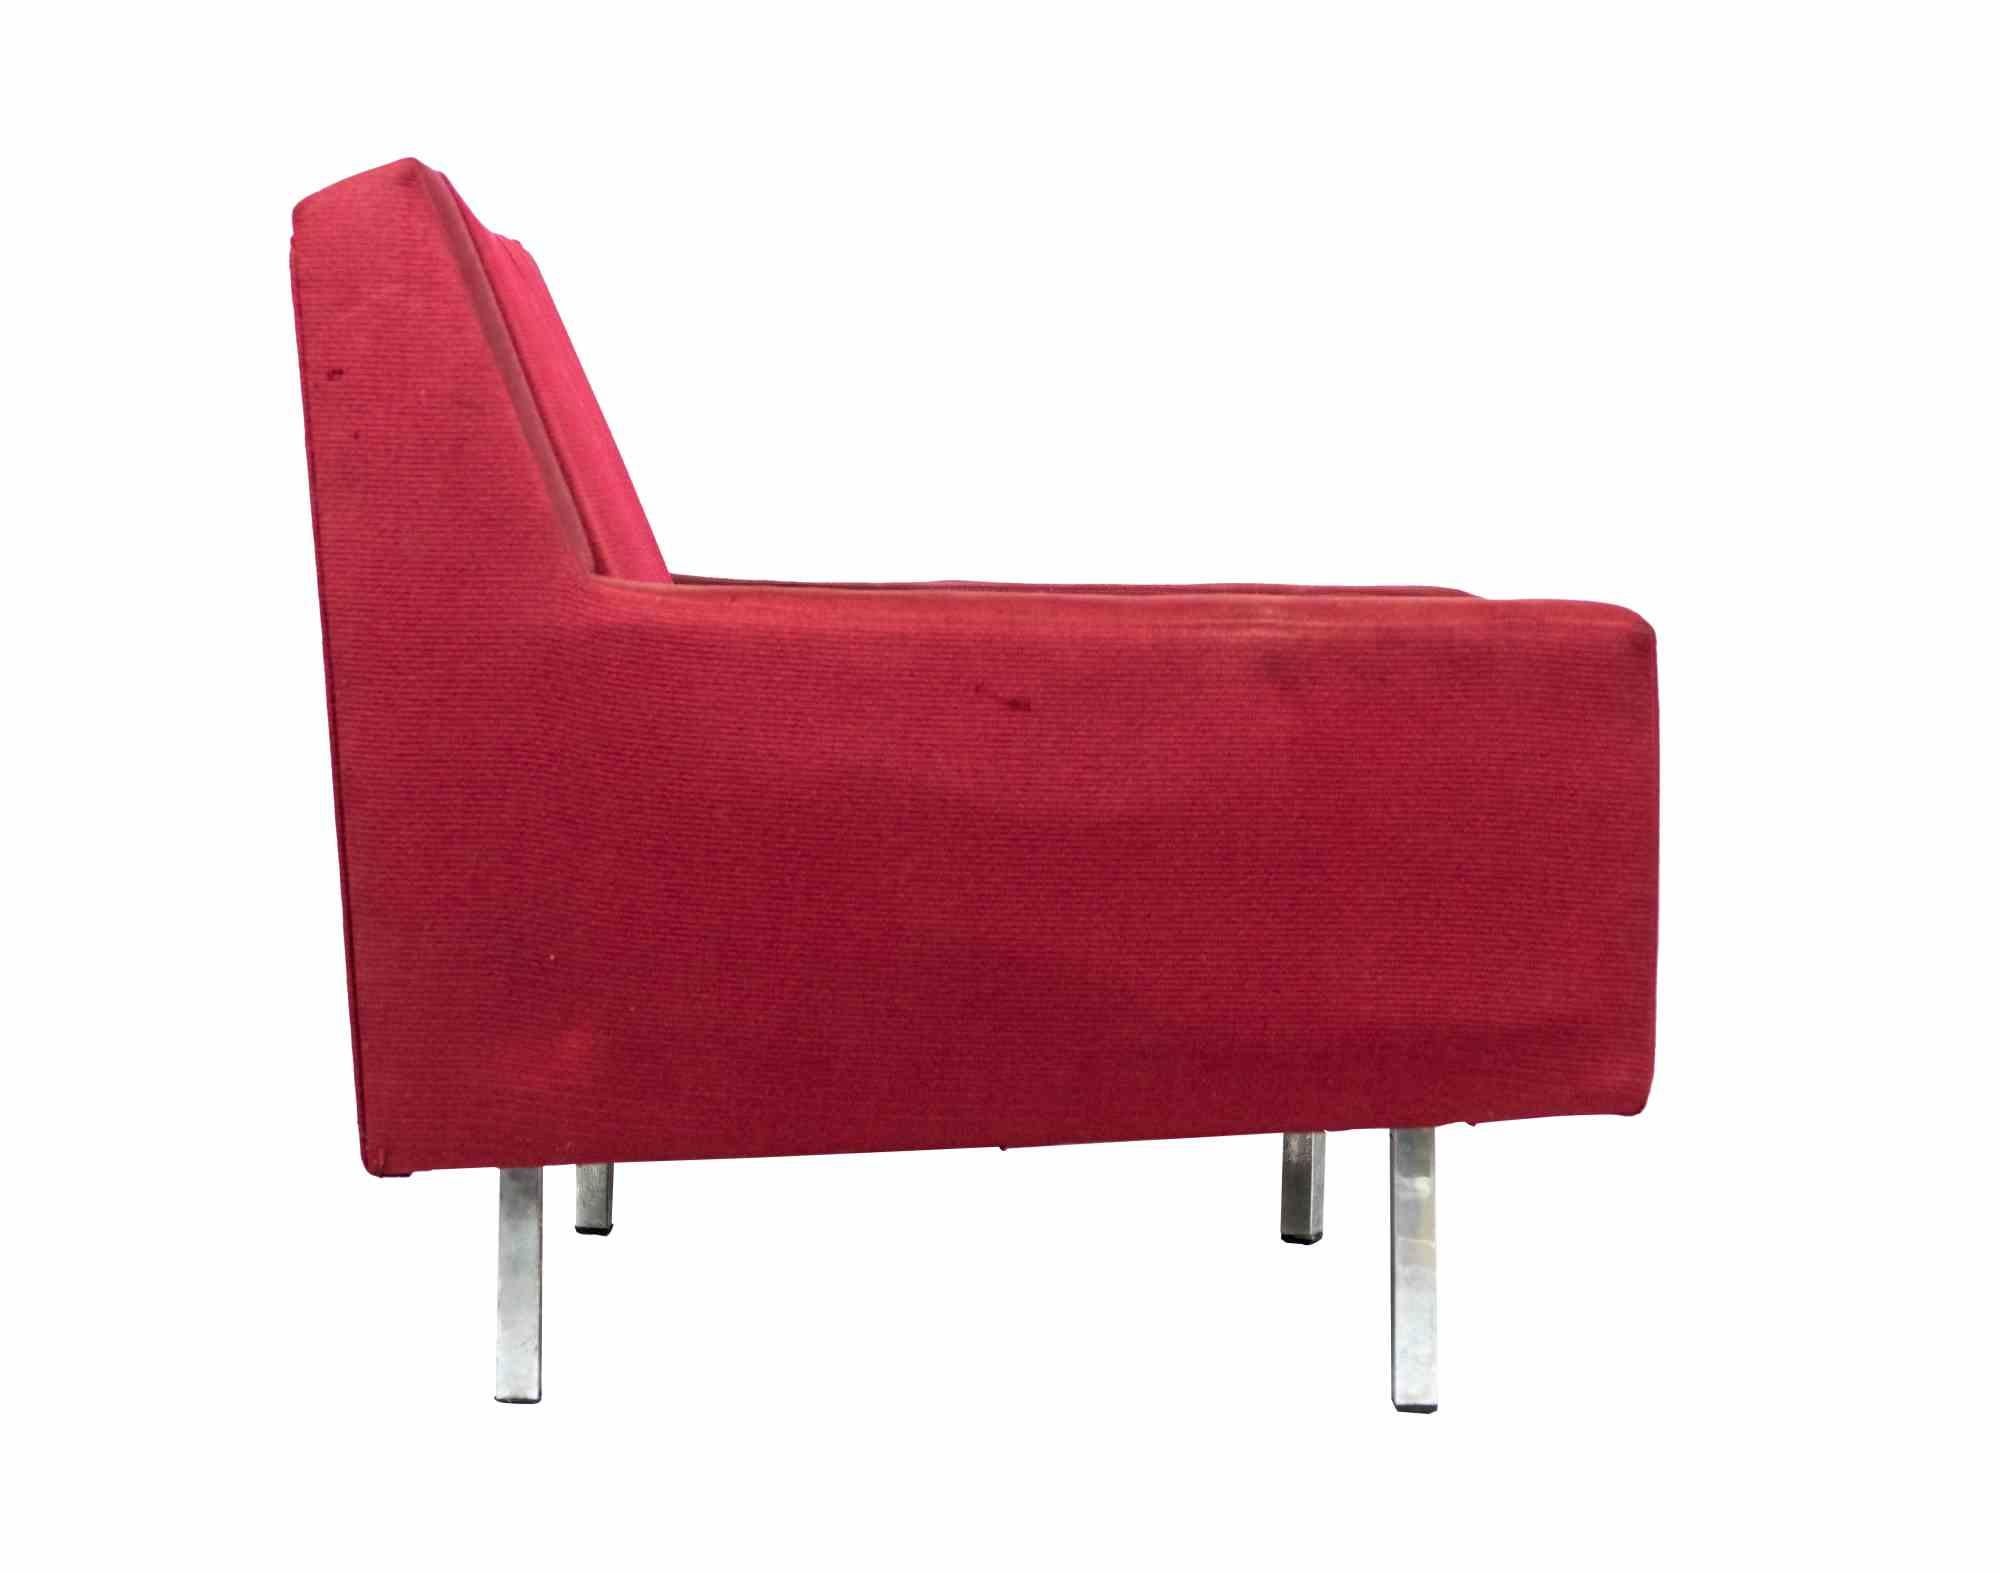 Der Florence Knoll Lounge Chair ist ein originelles Design-Möbelstück, das in den 1970er Jahren für Knoll realisiert wurde

Roter stoffbezogener Sessel.

Der ikonische Sessel Red ist Ausdruck des rationalen Designansatzes, den Florence Knoll von